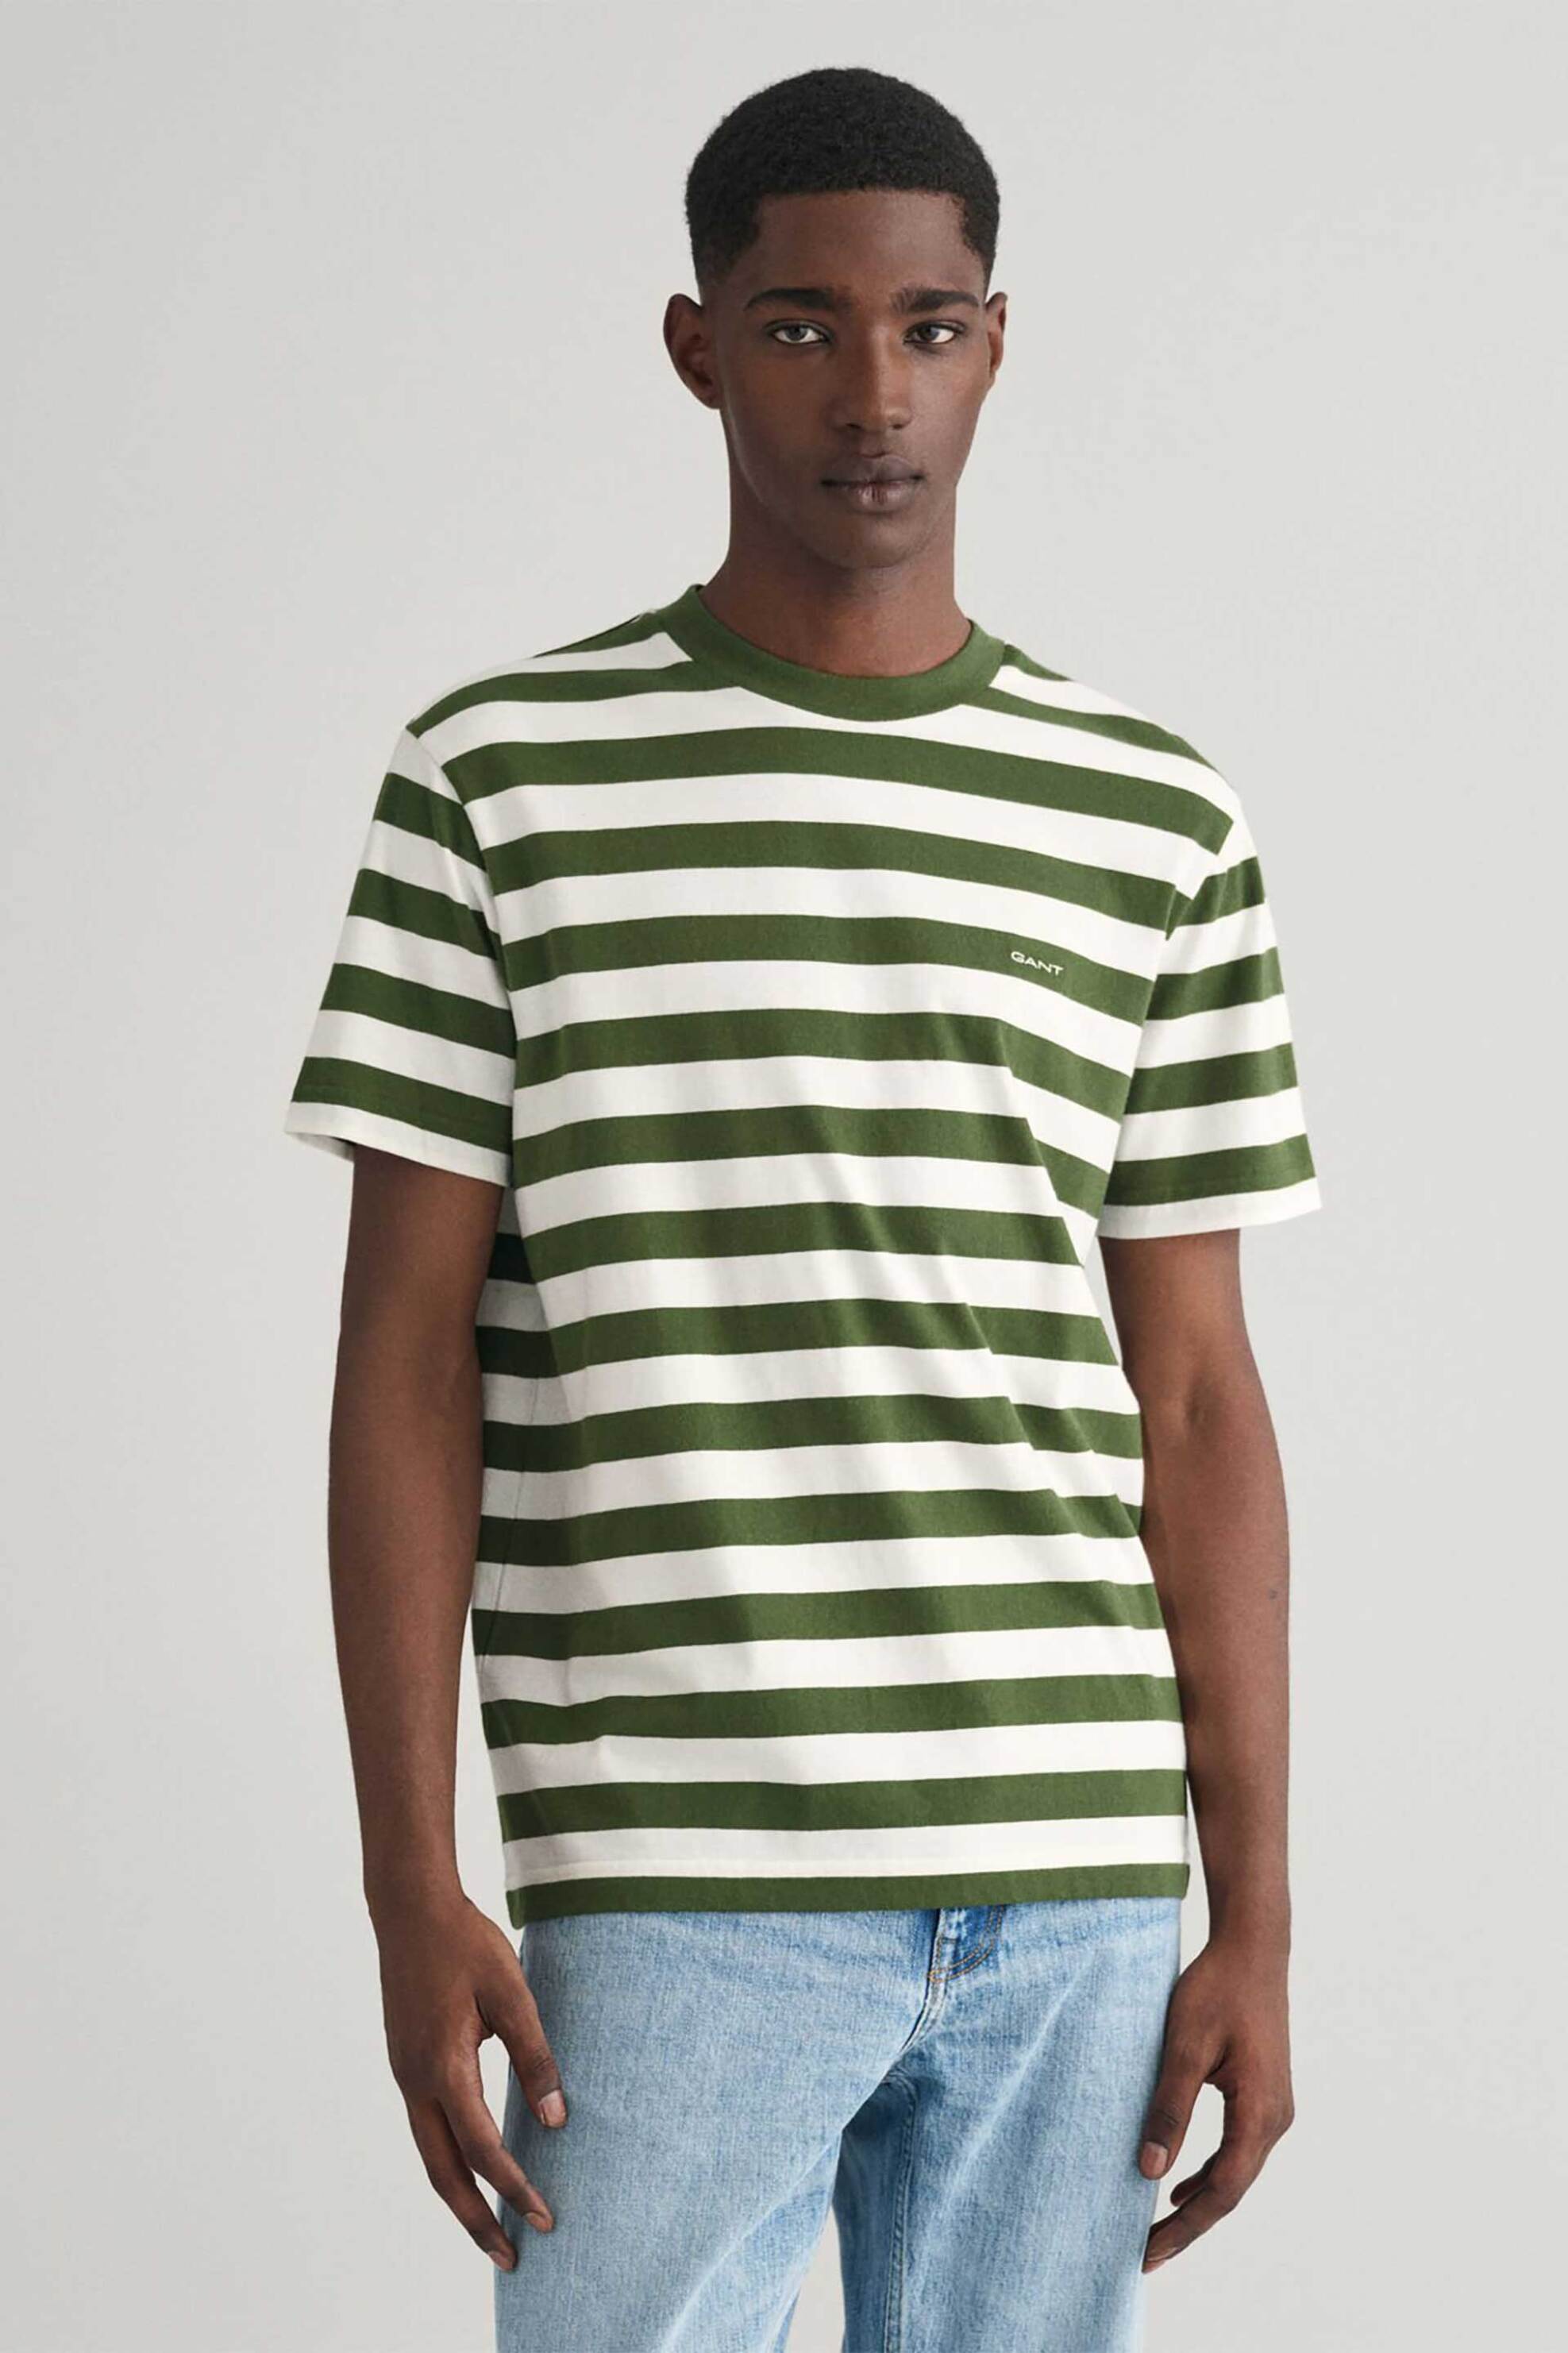 Ανδρική Μόδα > Ανδρικά Ρούχα > Ανδρικές Μπλούζες > Ανδρικά T-Shirts Gant ανδρικό T-shirt με ριγέ σχέδιο και λογότυπο Regular Fit - 2013041 Πράσινο